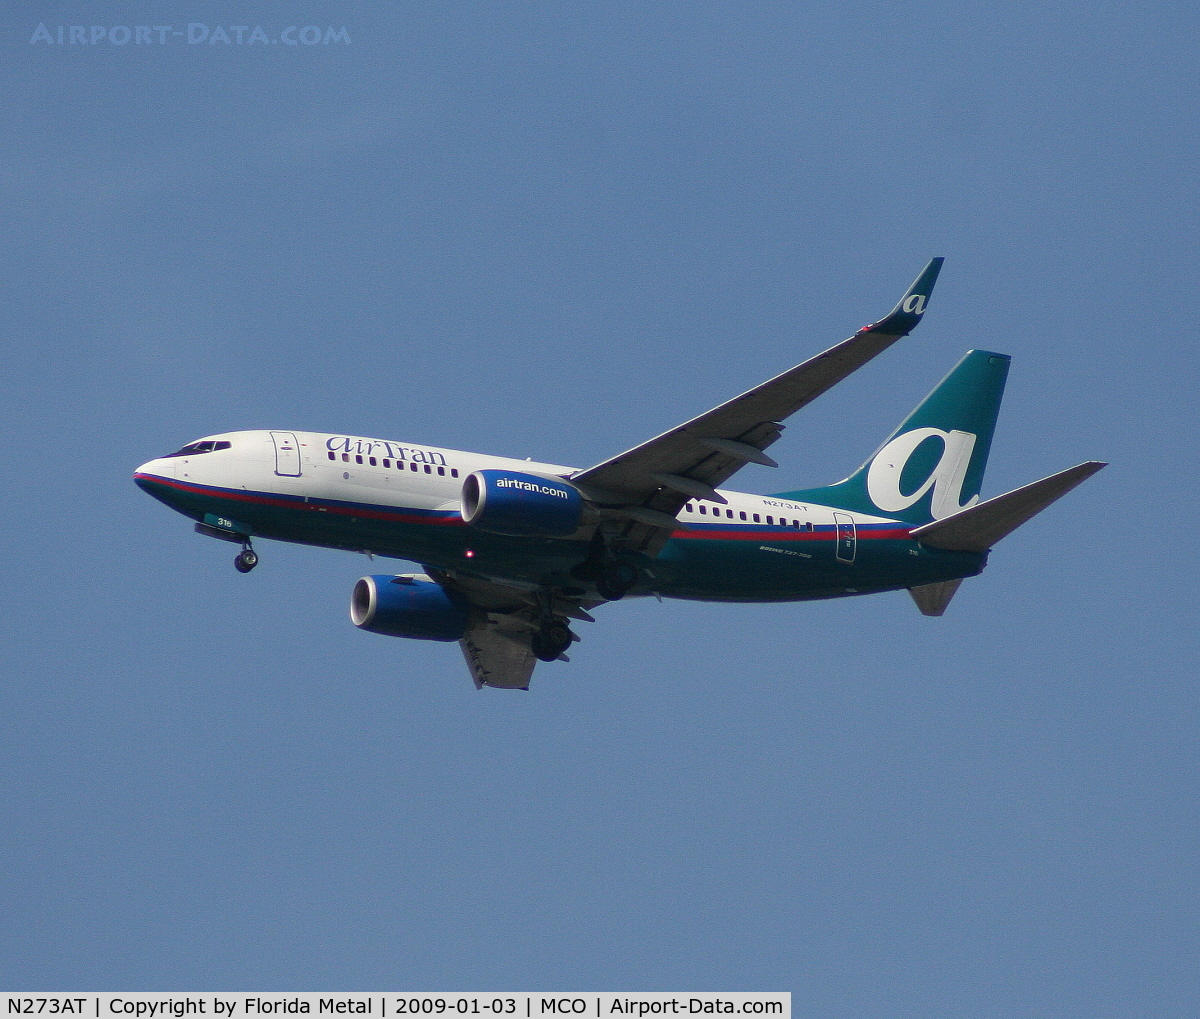 N273AT, 2005 Boeing 737-76N C/N 32662, Air Tran 737-700